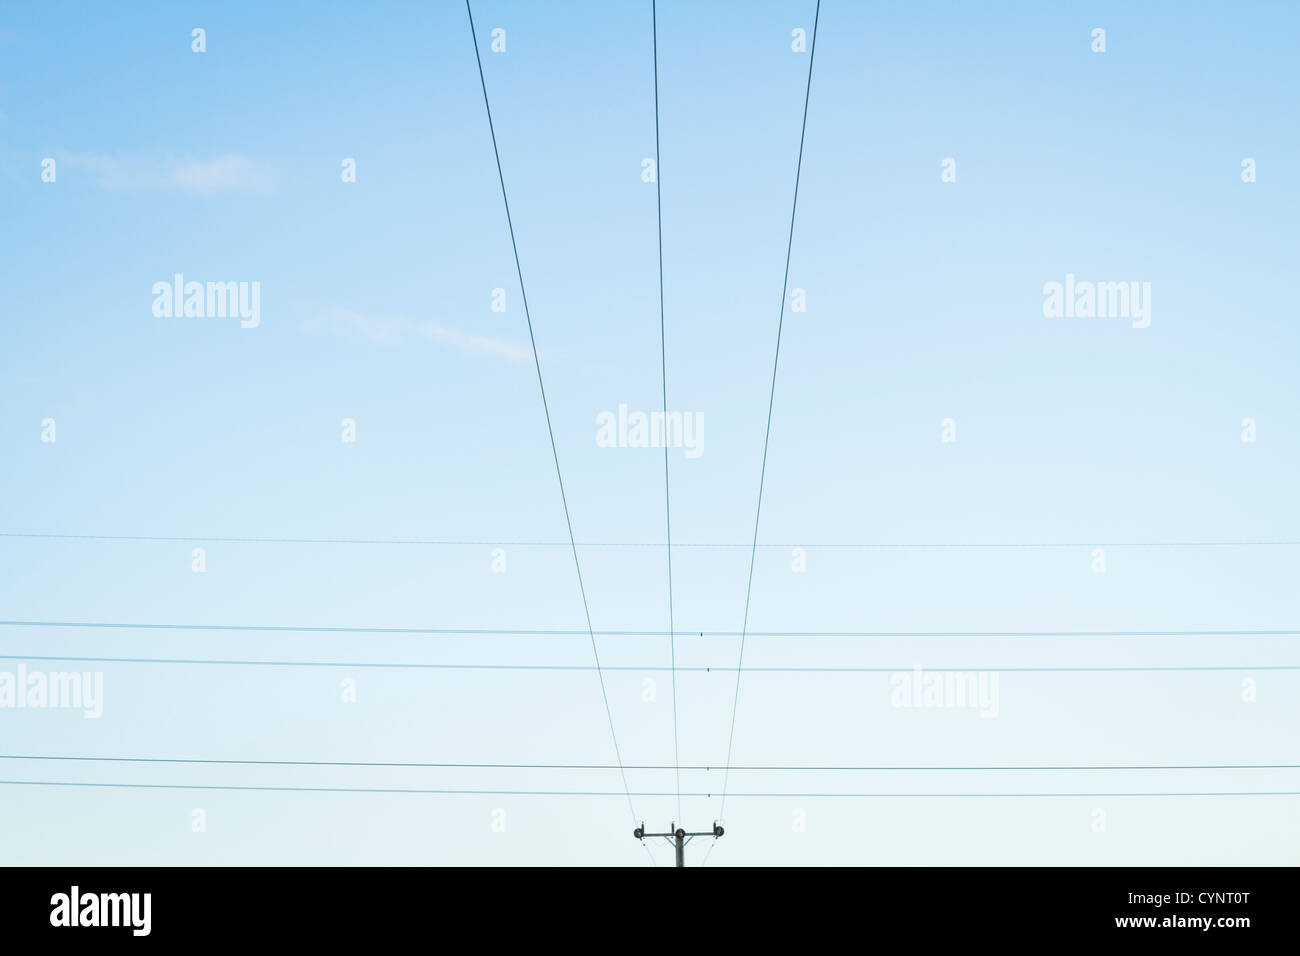 Fils croisés. Un ensemble de lignes d'électricité passant sur le dessus de l'autre vu contre un ciel bleu. Nottinghamshire, Angleterre, RU Banque D'Images